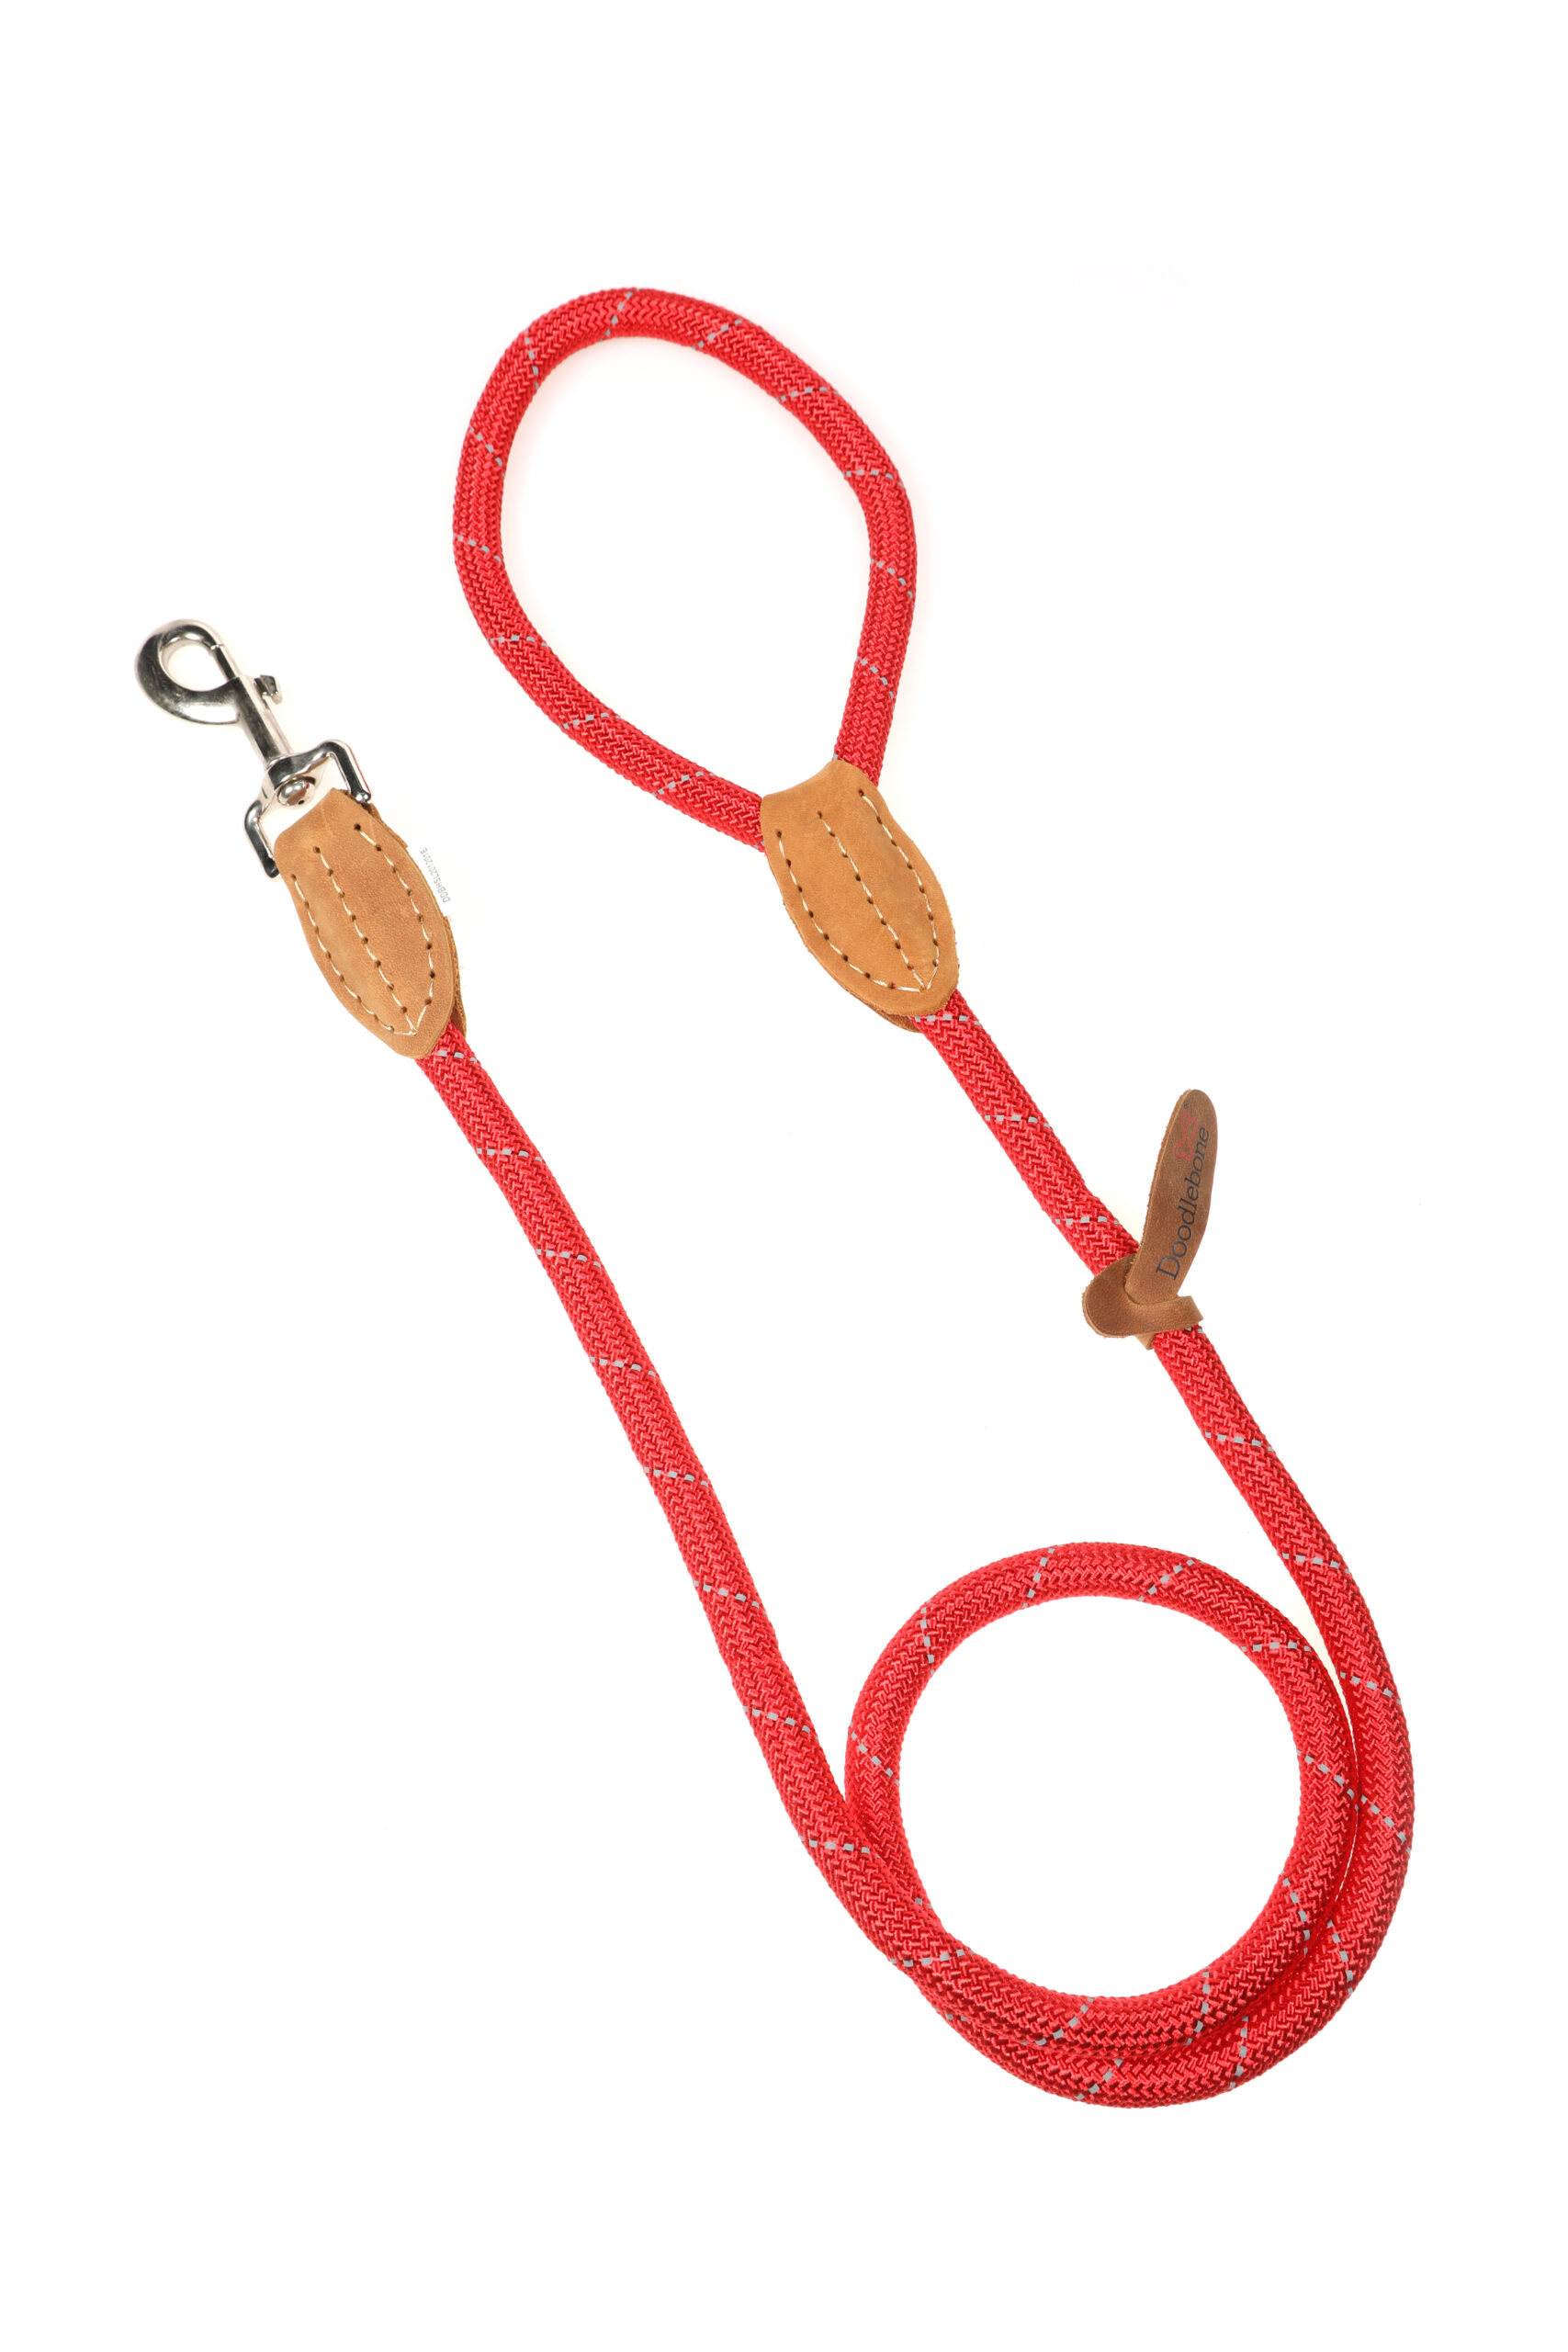 Doodlebone Originals Red Rope Dog Lead